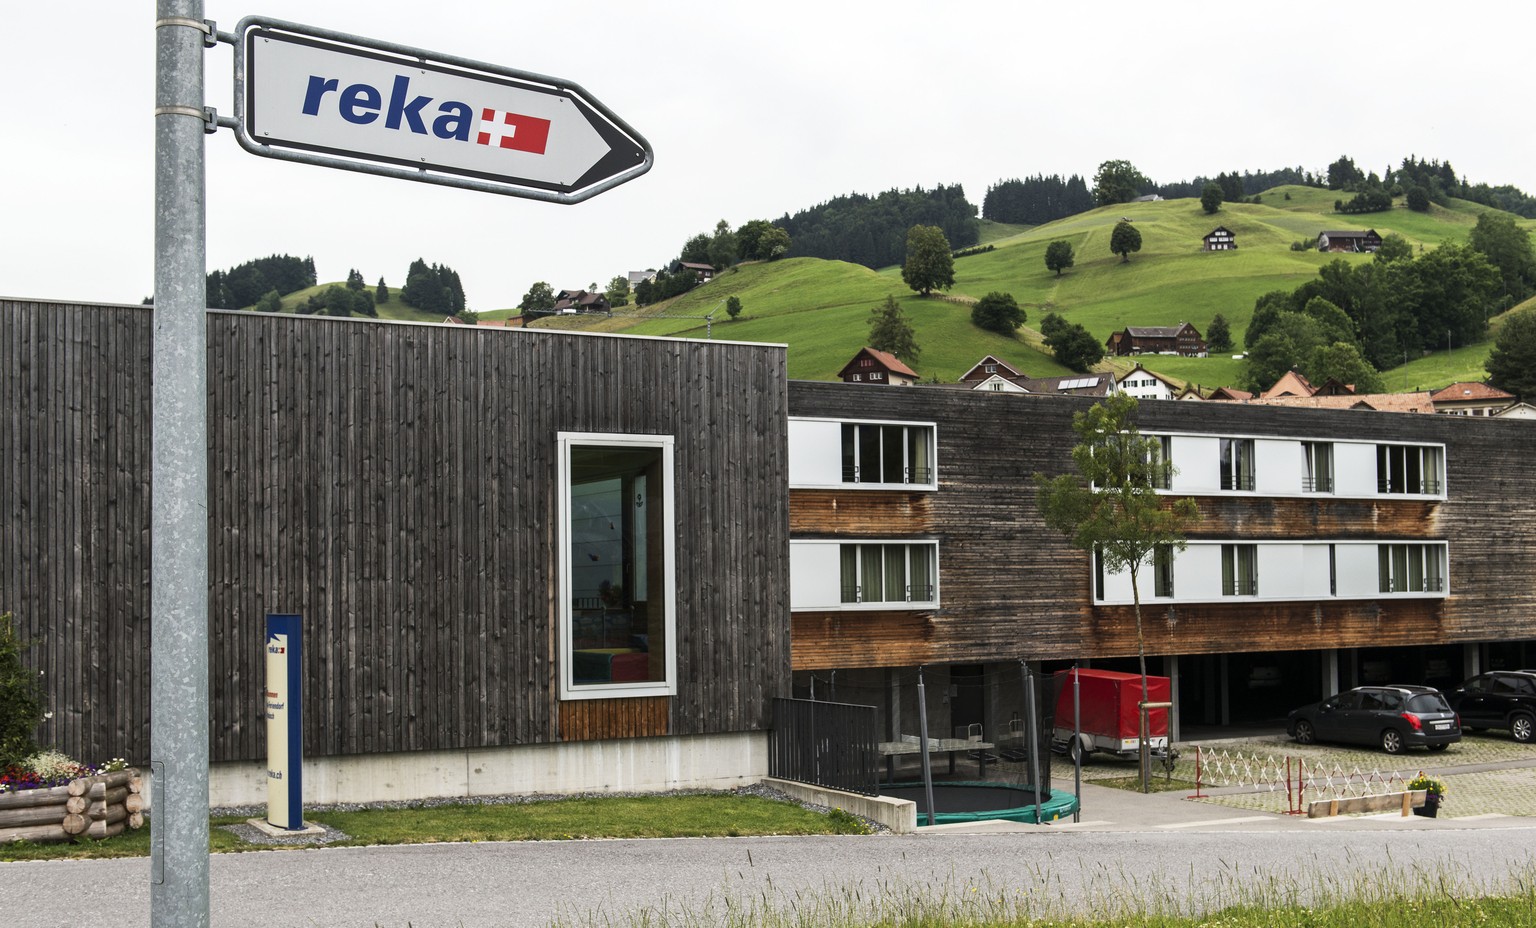 ZUM 75 JAHRE JUBILAEUM DER REKA FERIENDOERFER STELLEN WIR IHNEN FOLGENDES NEUE BILDMATERIAL ZUR VERFUEGUNG --- Das Reka Ferien-Dorf in Urnaesch am Freitag 4. Juli 2014. Die Reka (Schweizerische Reisek ...